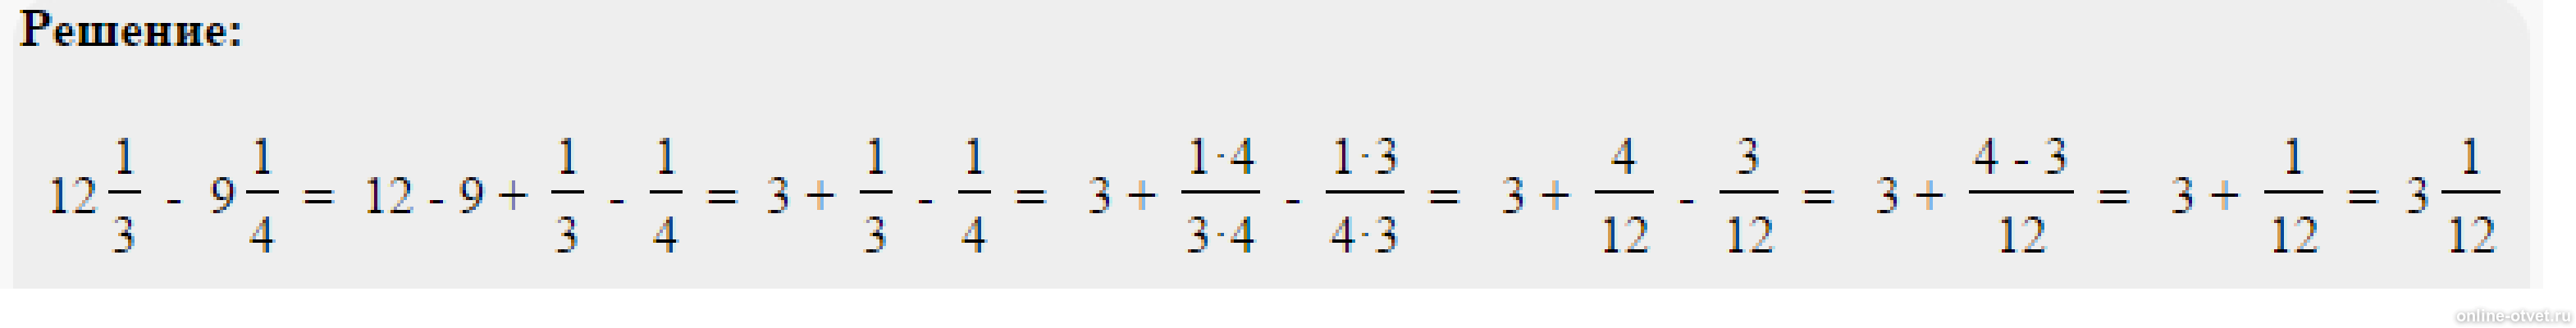 Решить пример одна целая одна пятая. Пример 4 целых3/8*2 целых 3/5*8/9. Решить пример 2 целых минус 1 целая 3/5. Минус 1 целая 3/8 минус 2 целых 5/12.